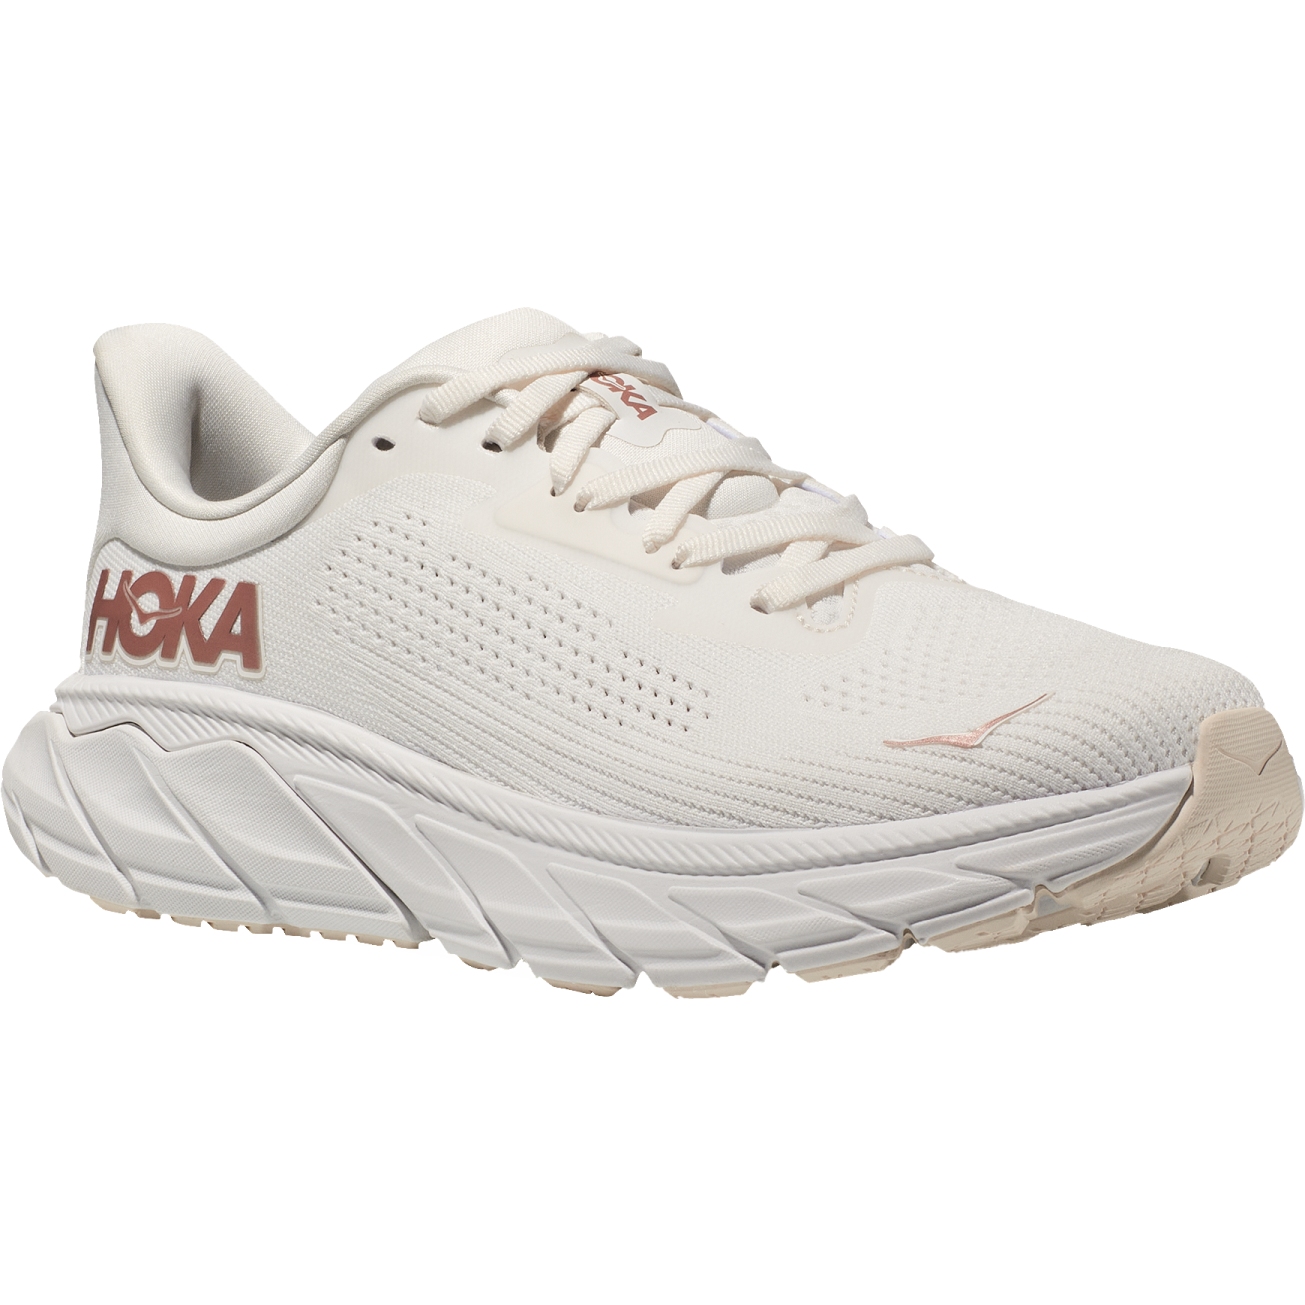 Picture of Hoka Arahi 7 Running Shoes Women - blanc de blanc / rose gold